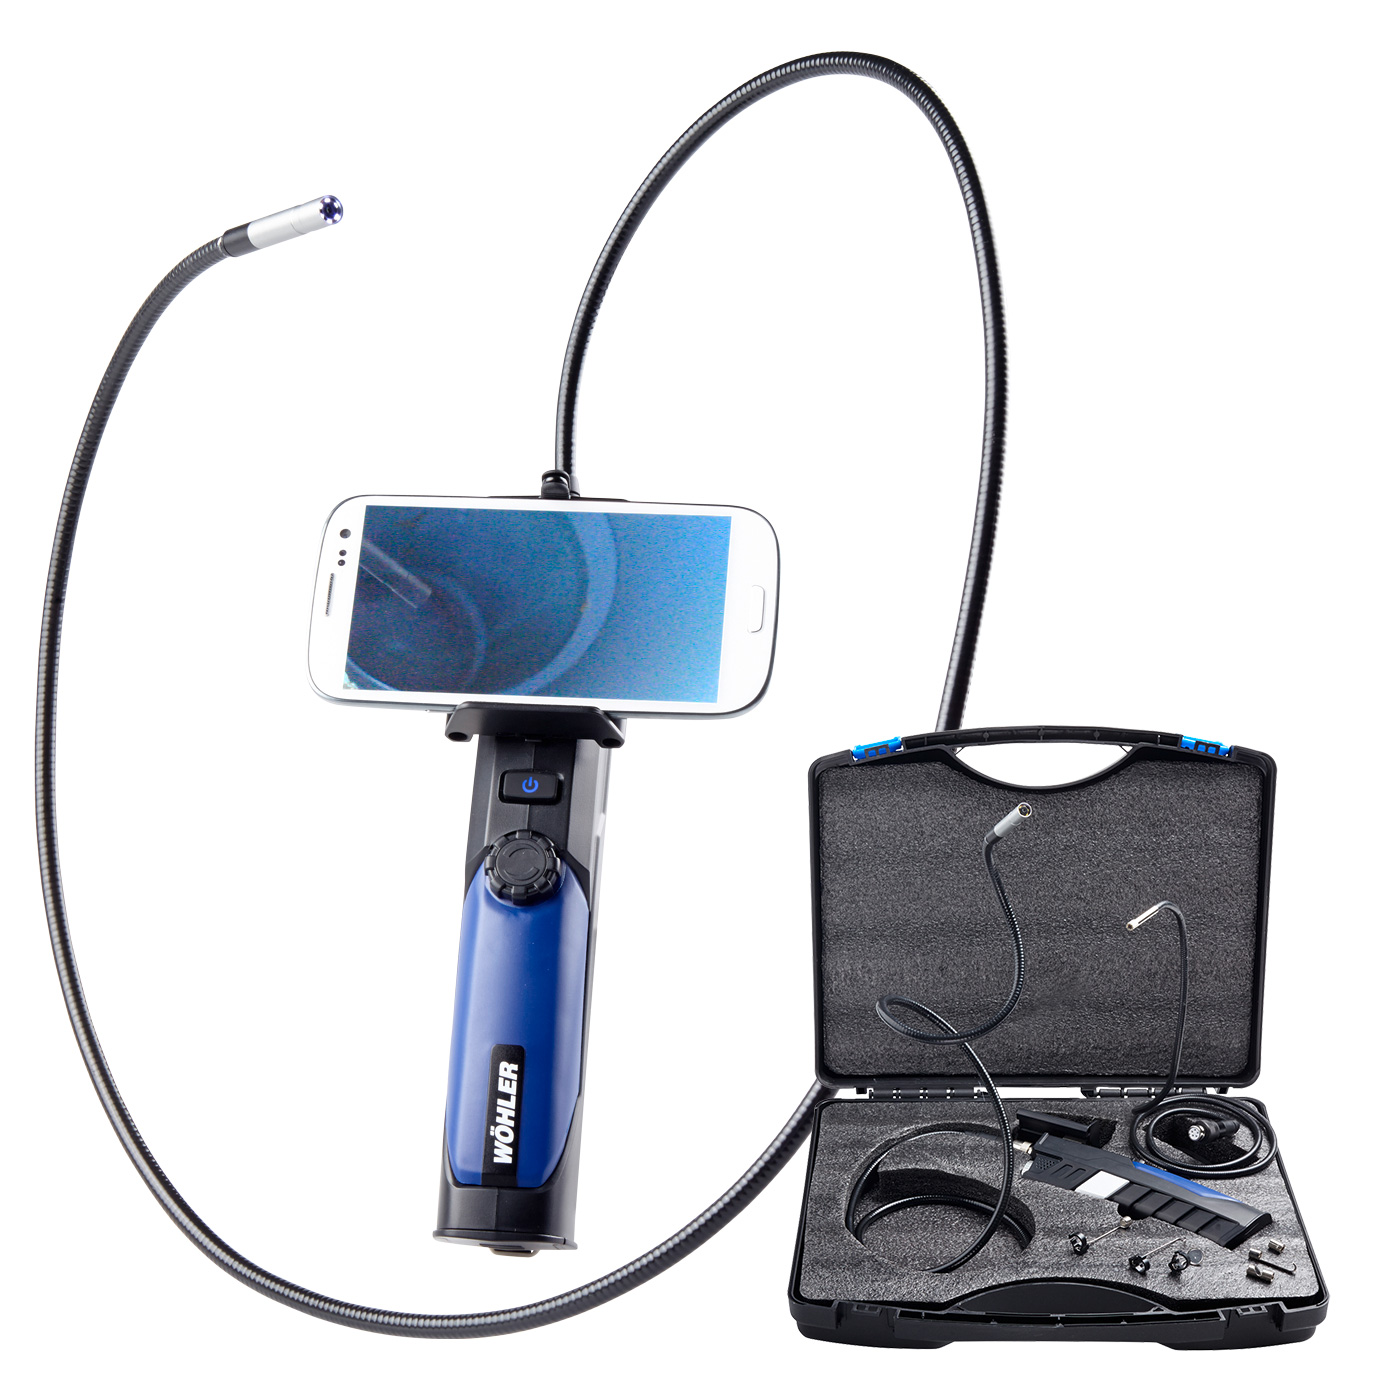 Wöhler VE 200 HD-Video-Endoskop inkl. Sonden Ø 8,5 mm / Ø 5,5 mm online kaufen